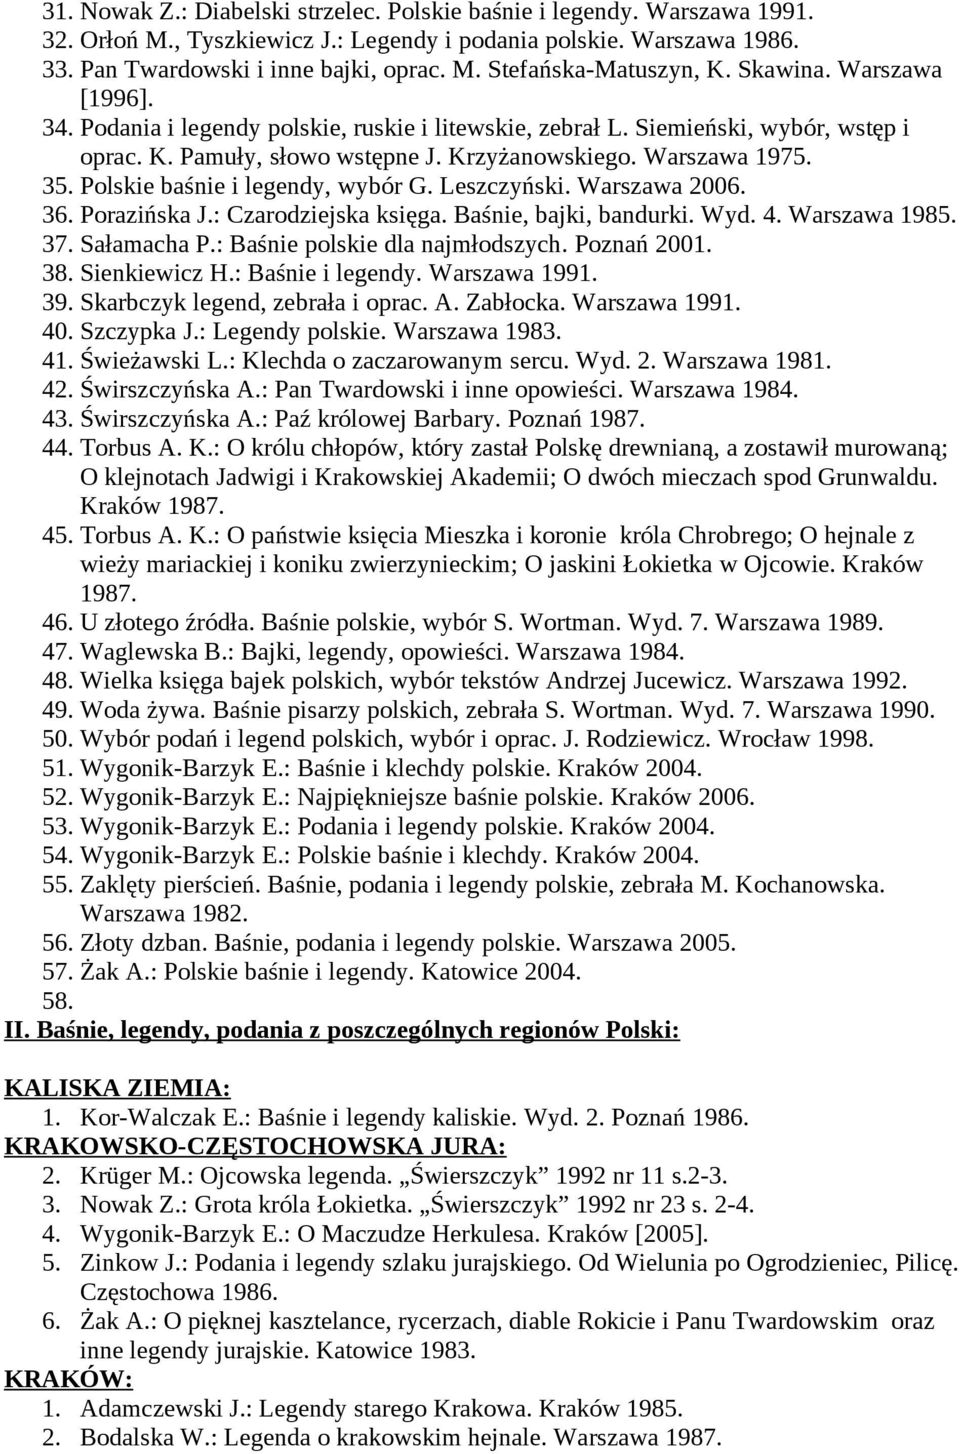 Polskie baśnie i legendy, wybór G. Leszczyński. Warszawa 2006. 36. Porazińska J.: Czarodziejska księga. Baśnie, bajki, bandurki. Wyd. 4. Warszawa 1985. 37. Sałamacha P.